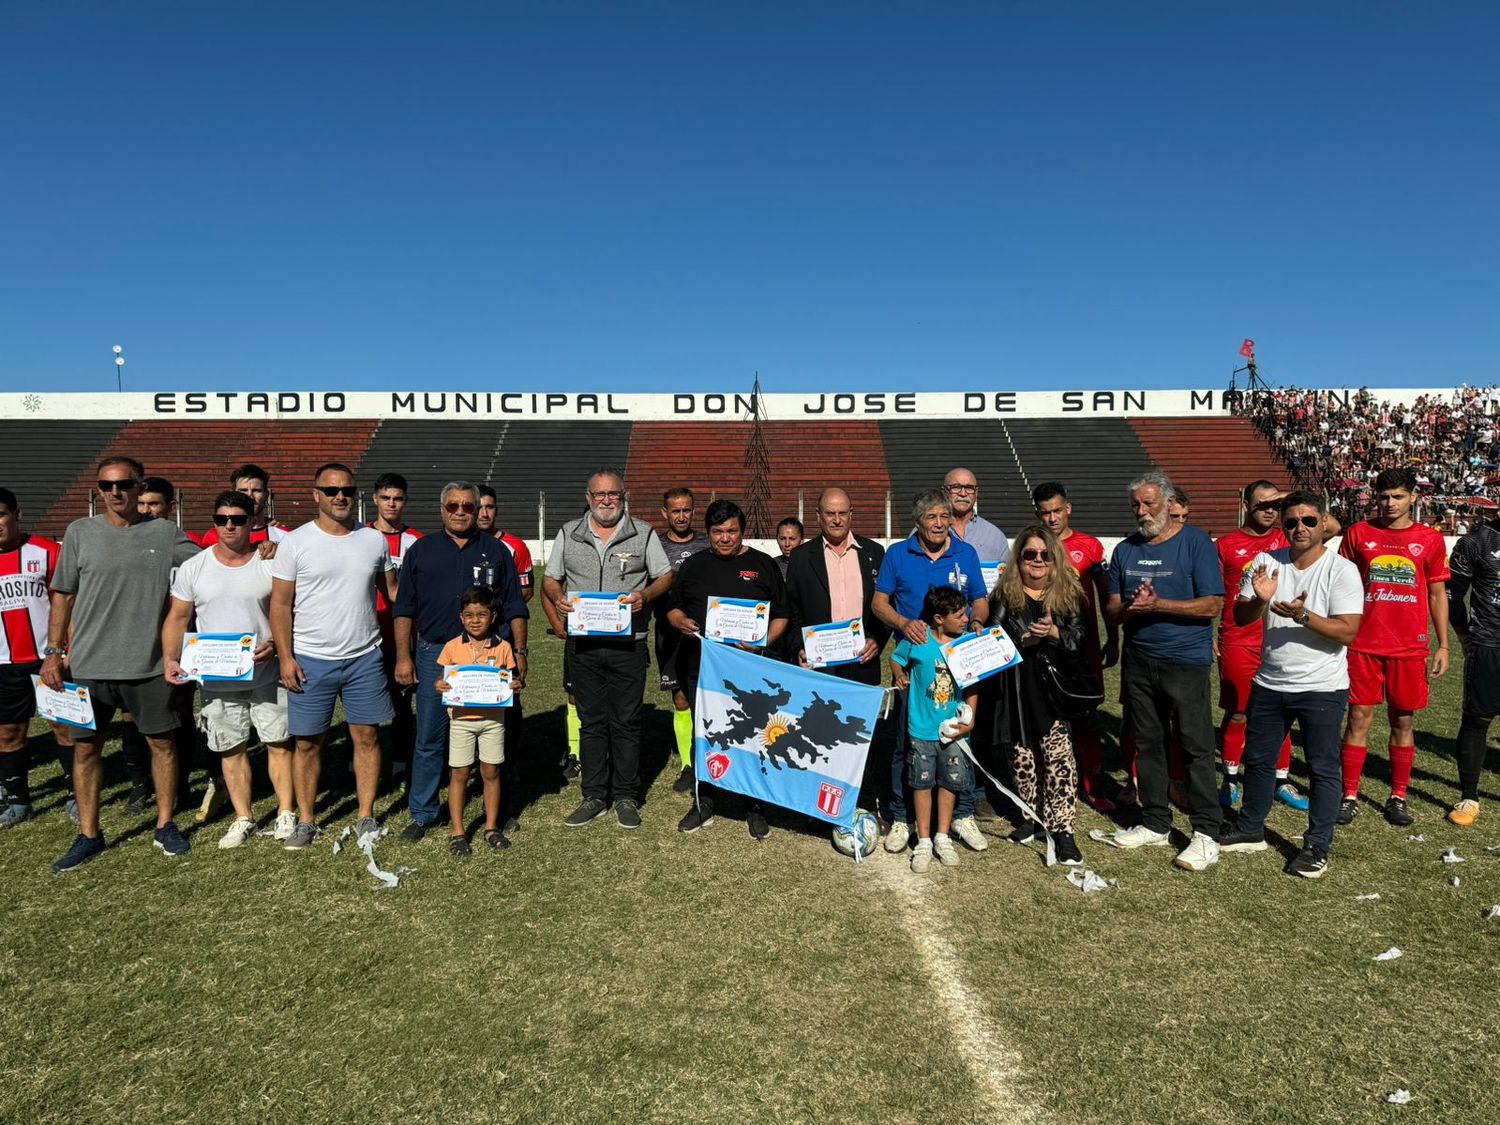 Los equipos de Mitre y Paraná en el homenaje a los ex combatientes antes de comenzar el partido en el Estadio Municipal.